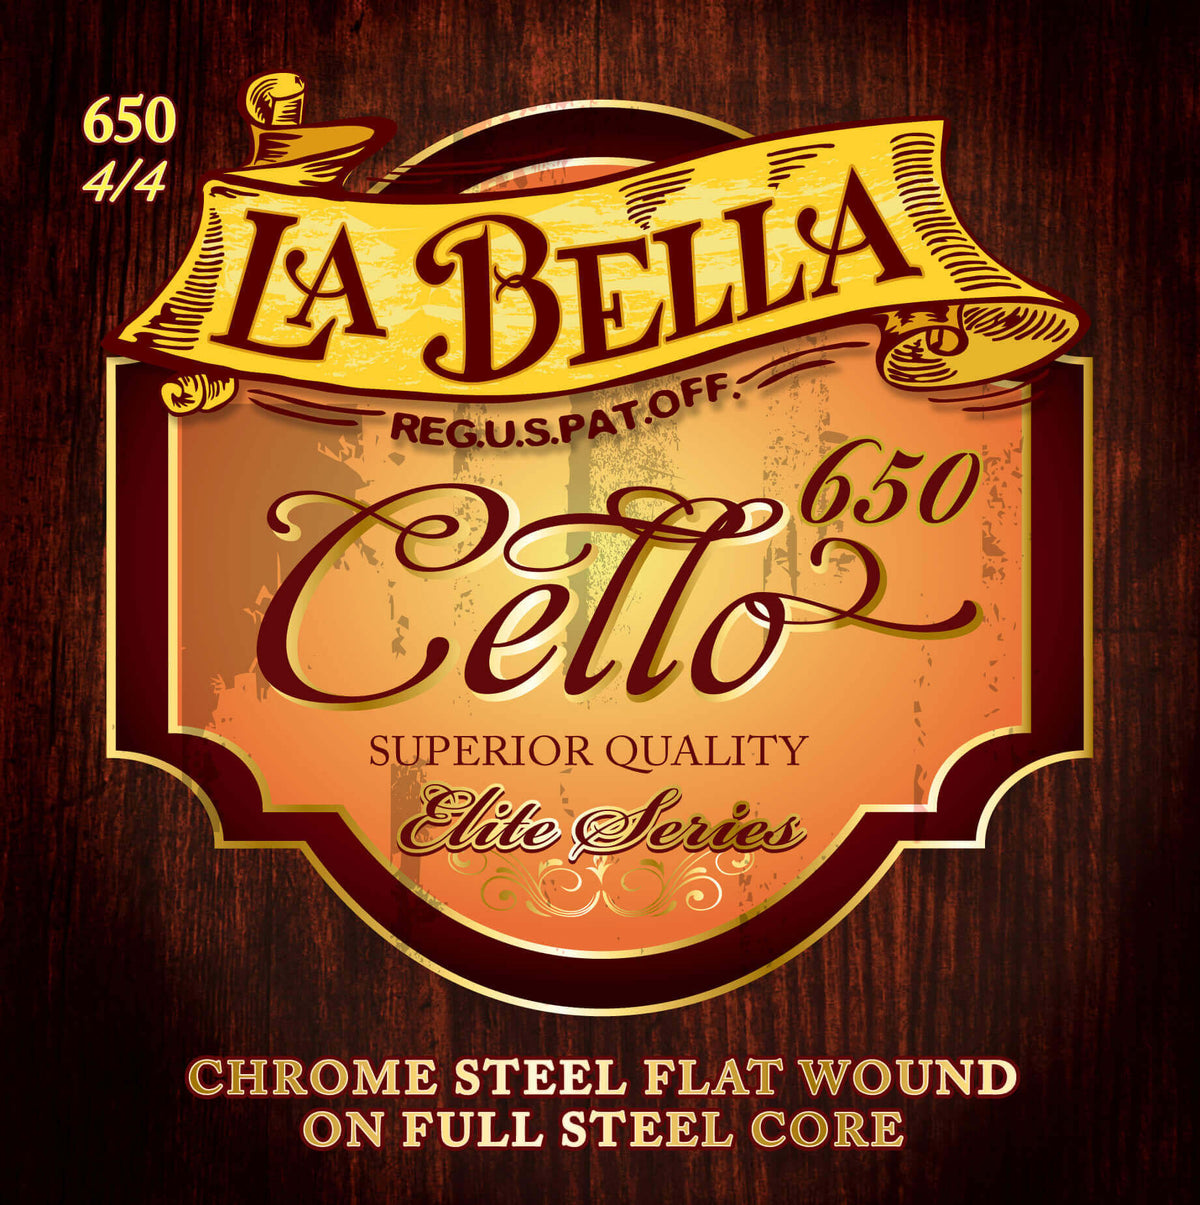 Labella Elite Cello G String